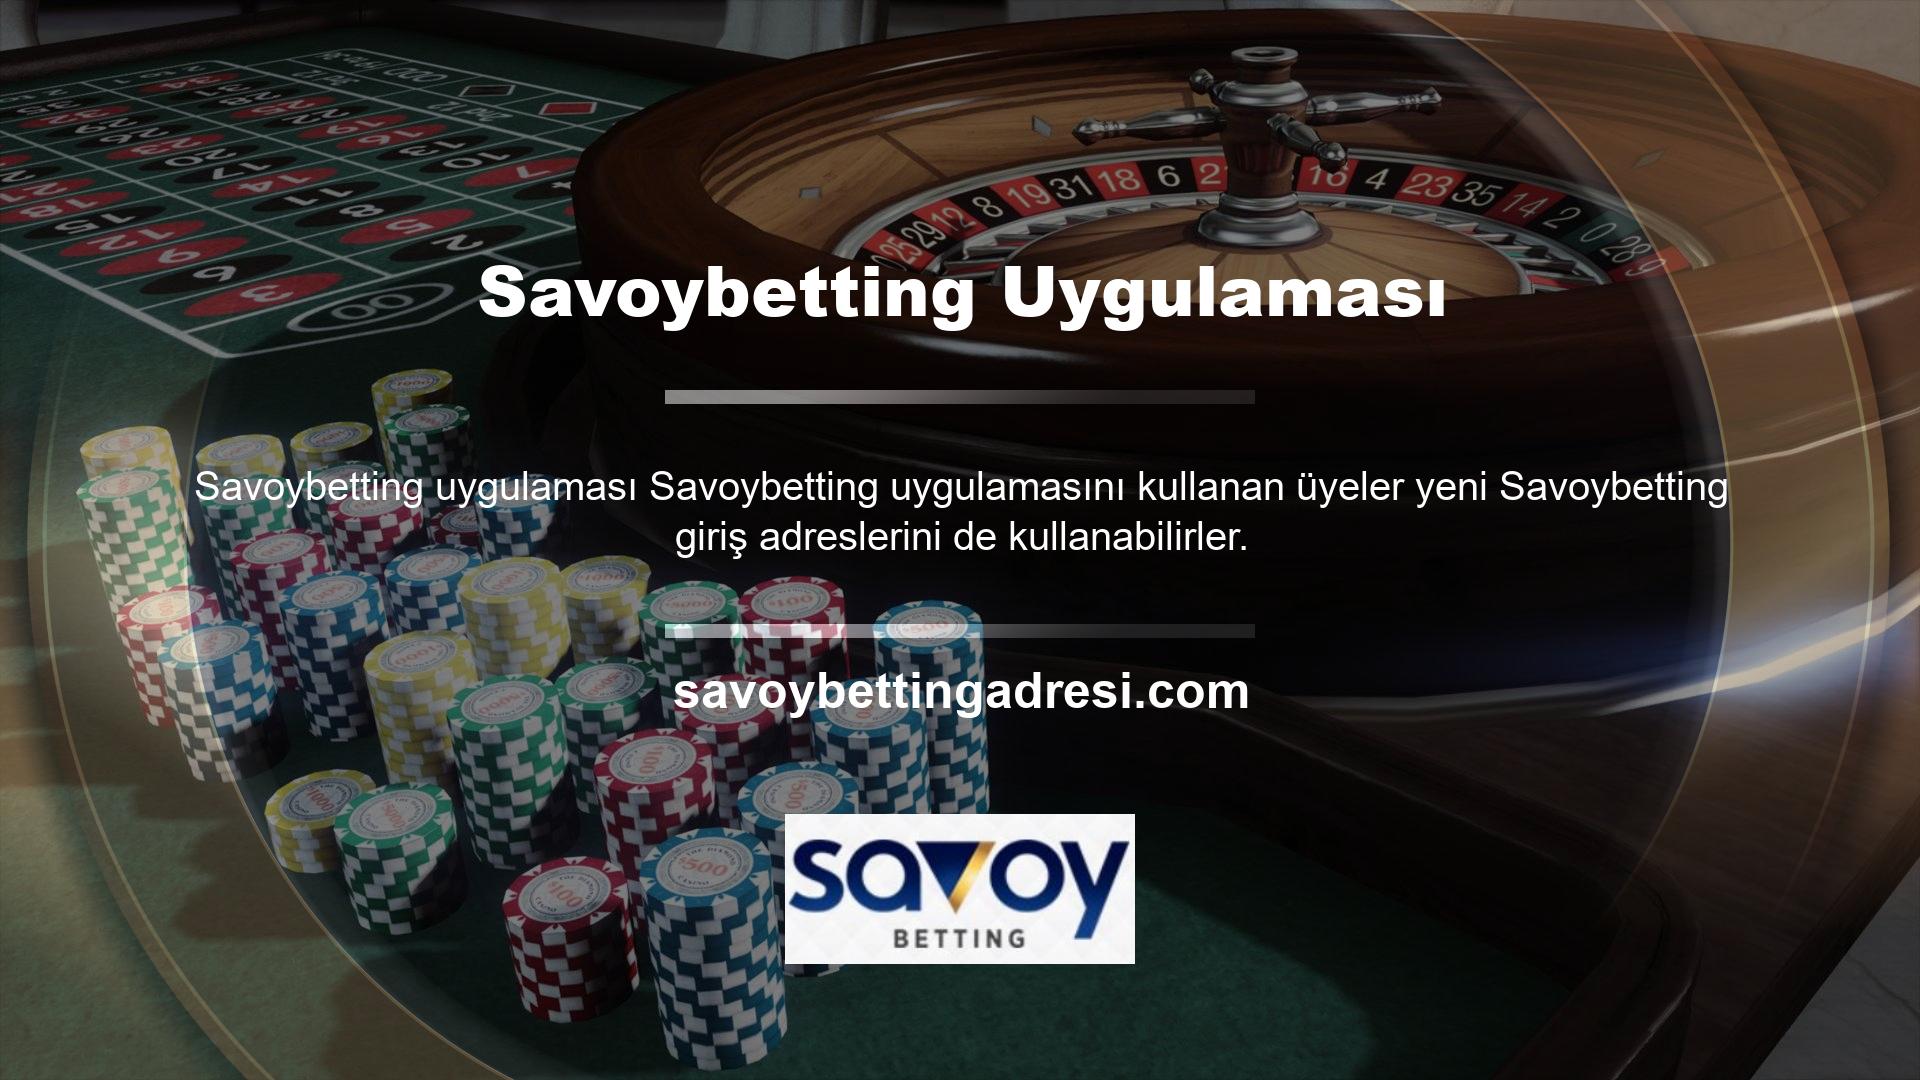 Üyeler Savoybetting uygulaması üzerinden diledikleri zaman canlı casino ve slot oyunları oynayabilir, spor bahisleri ve canlı bahis kuponlarına girebilir, hesaplarından para çekme gibi detaylı işlemleri gerçekleştirebilirler